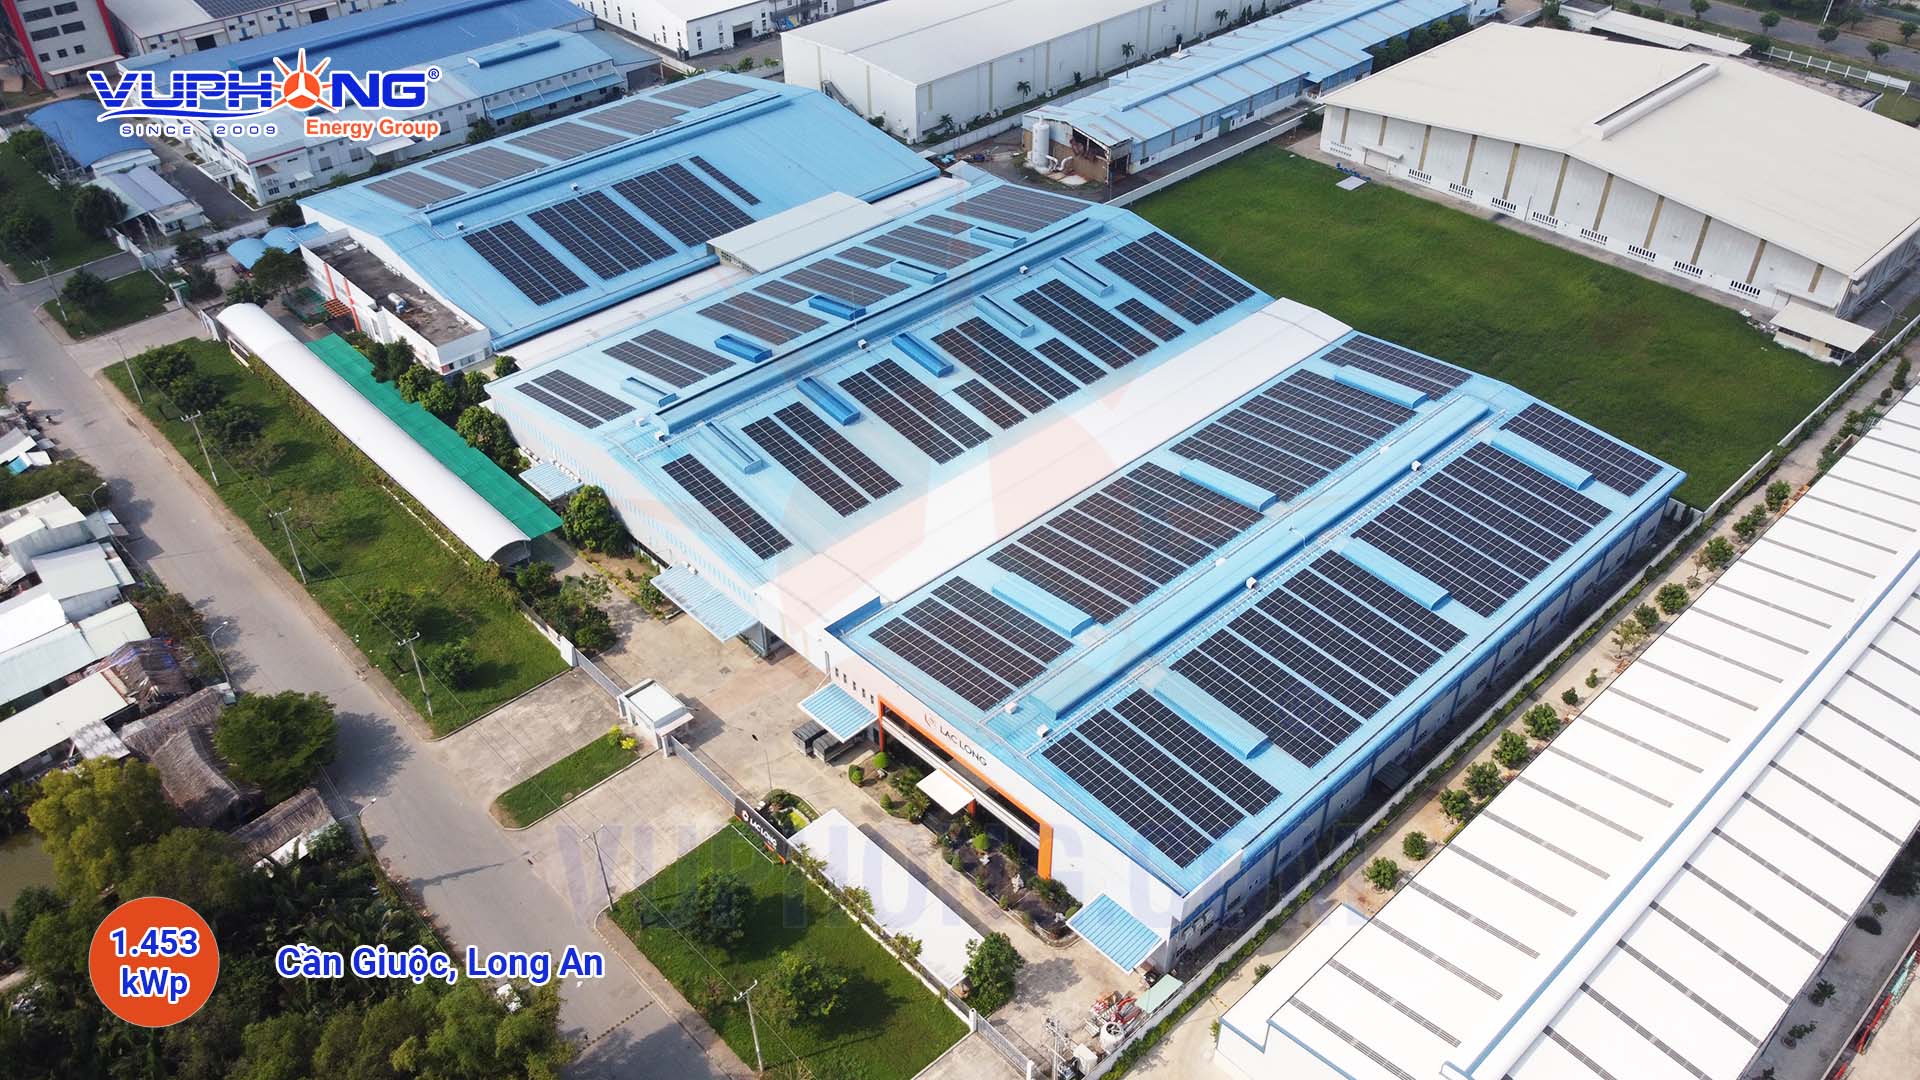 Hệ thống điện mặt trời hòa lưới 1 MWp Châu Thành, Tiền Giang - Công Ty Cổ Phần Vũ Phong Energy Group